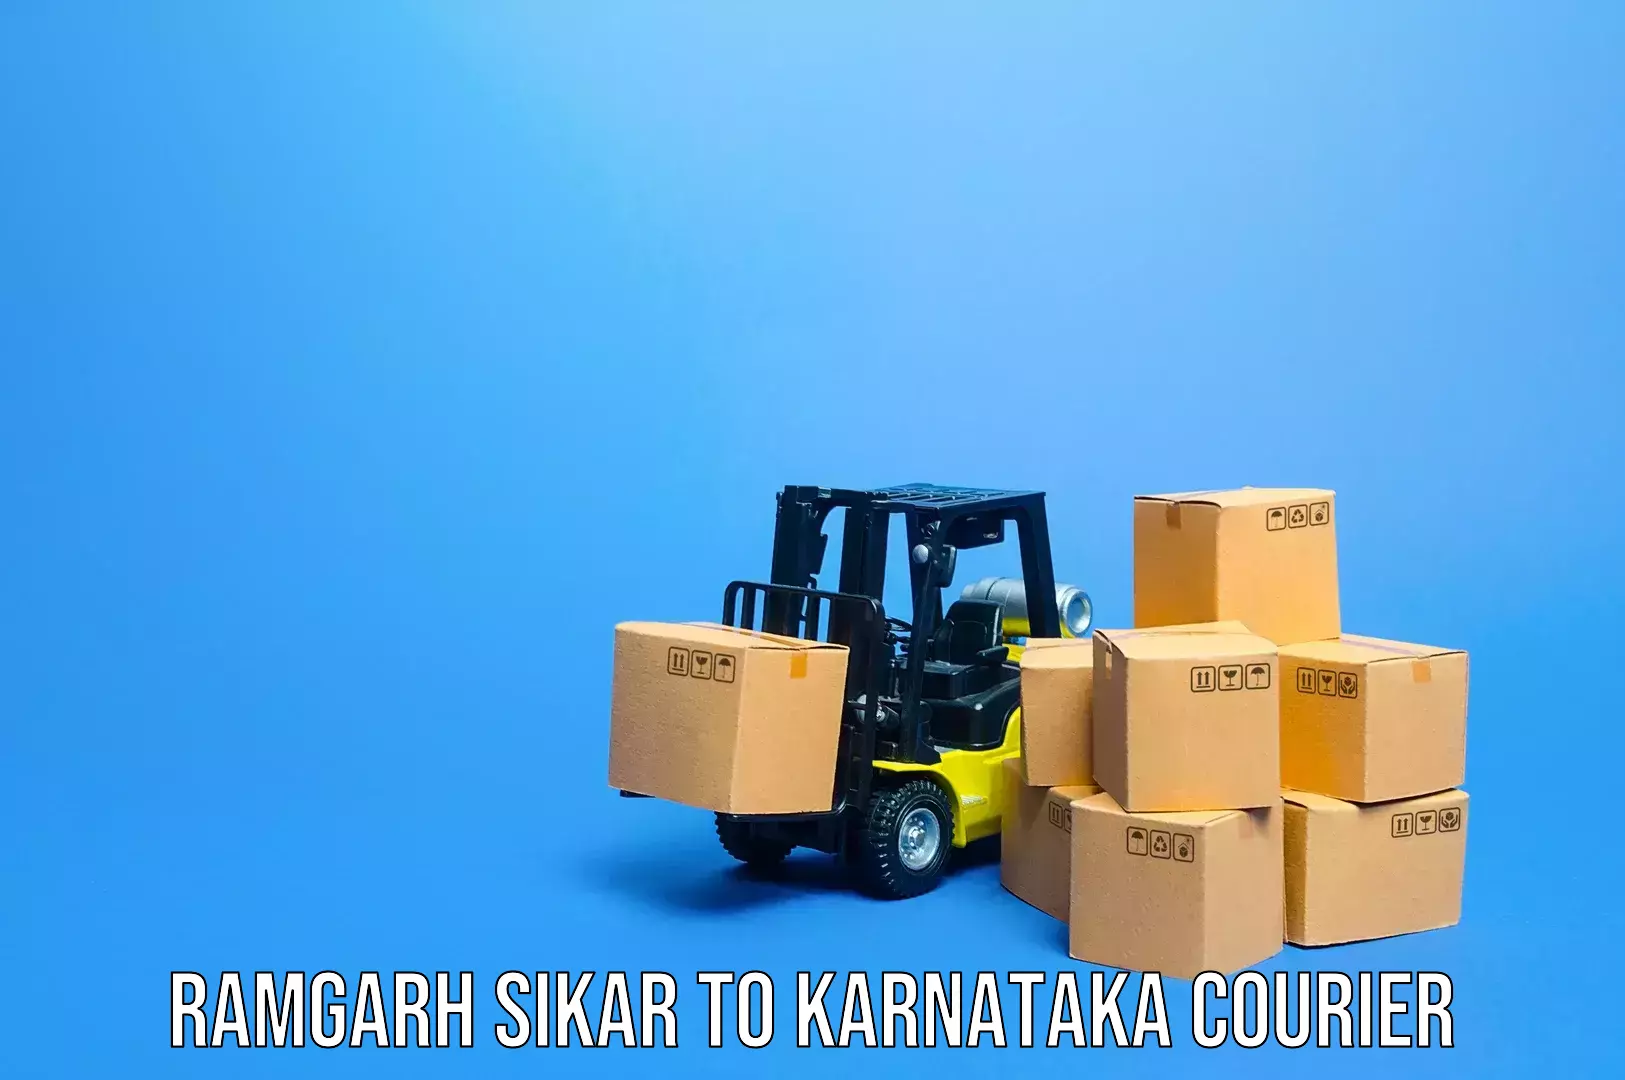 Simplified luggage transport Ramgarh Sikar to Heggadadevankote